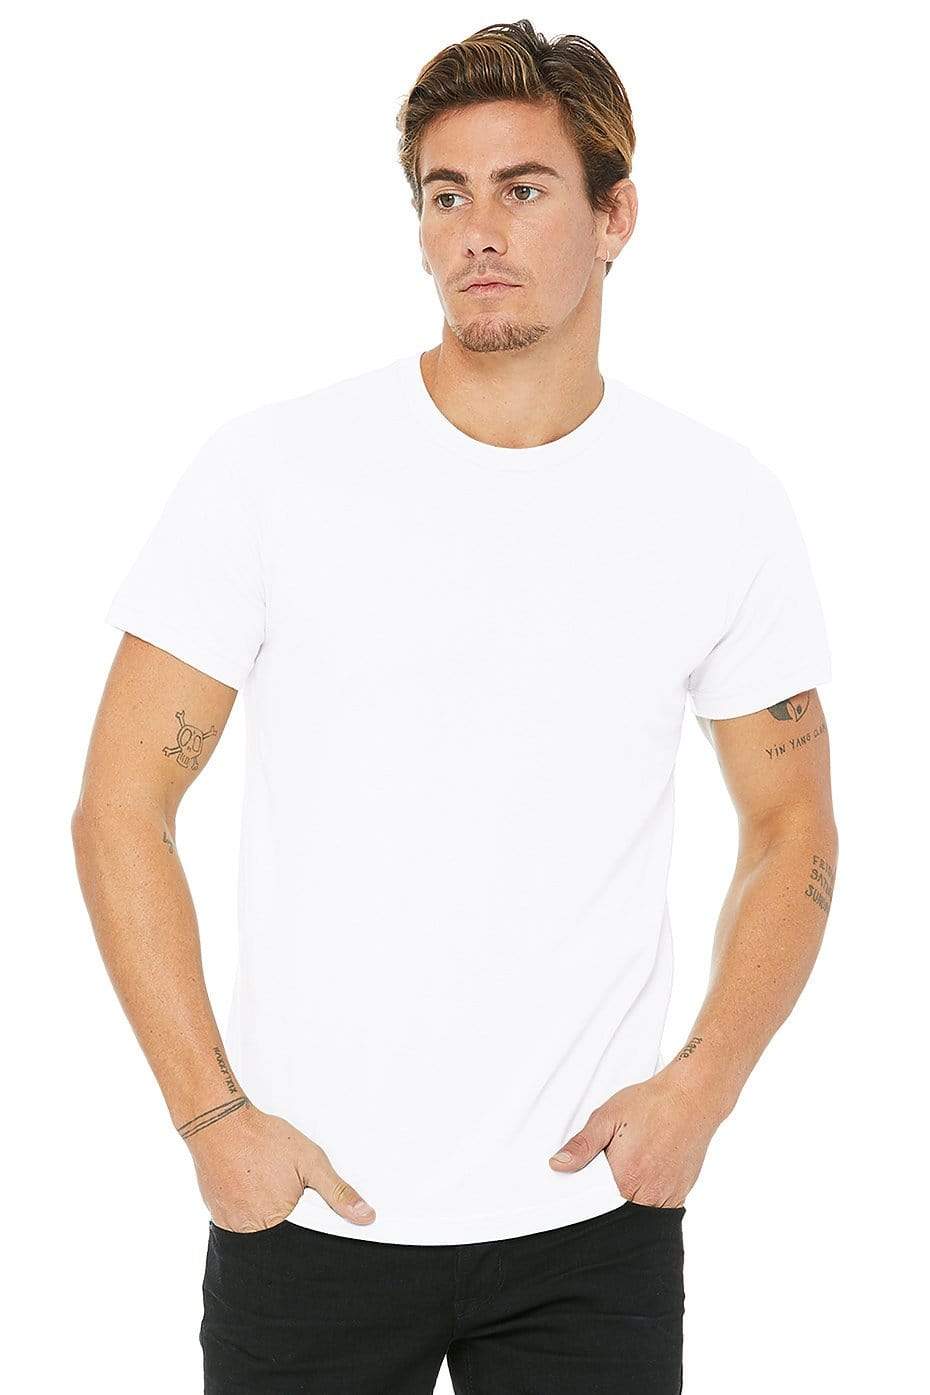 Grooveman Music T Shirt XS / White Jersey Short Sleeve Tee